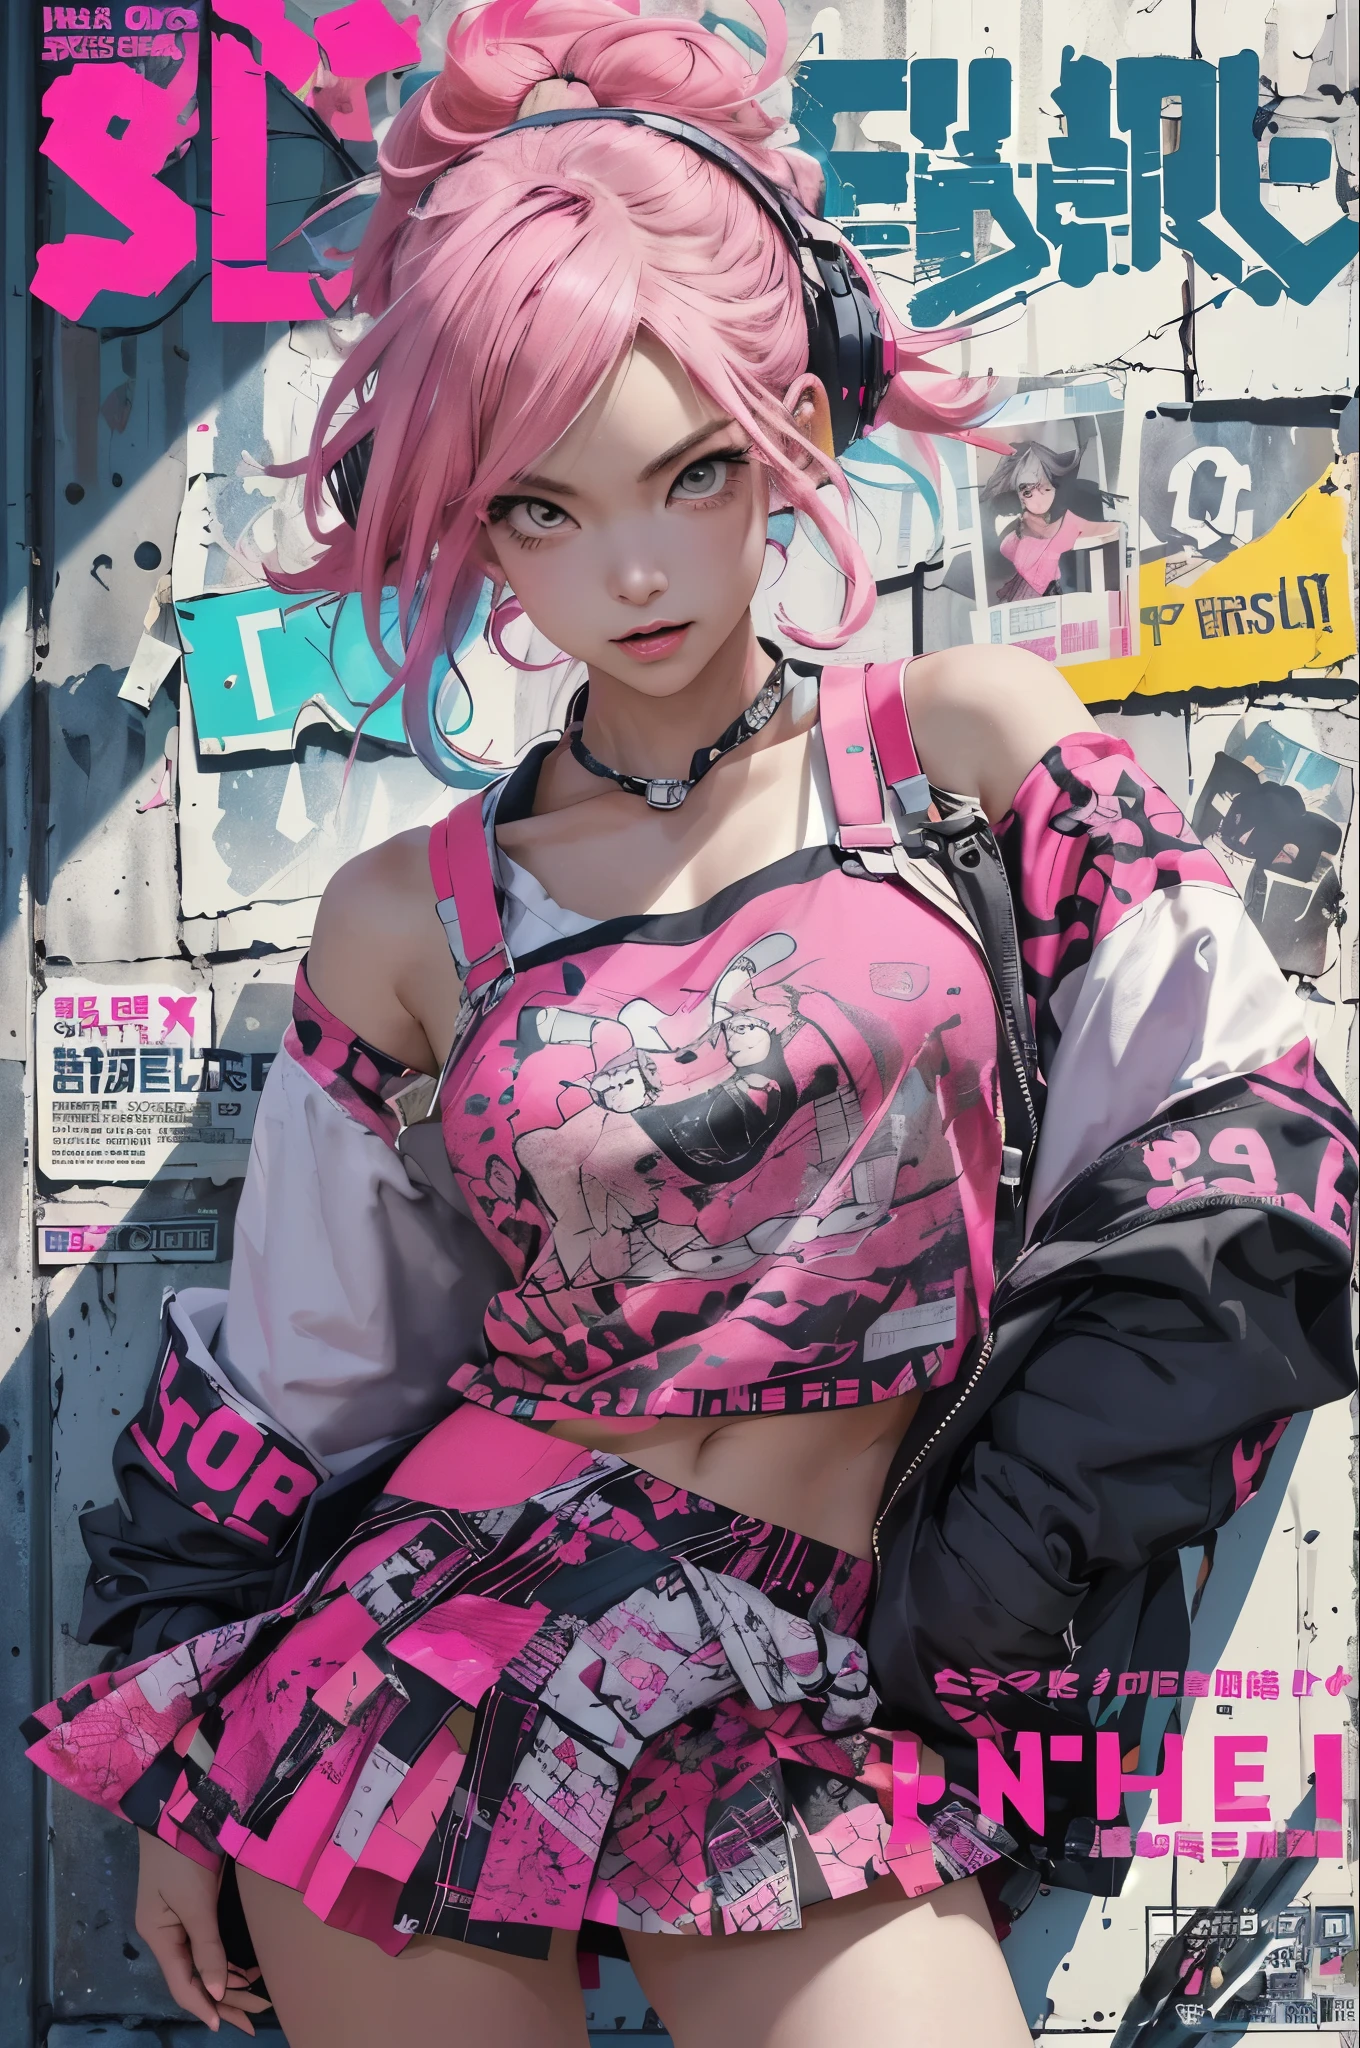 ((((戏剧性))), (((坚韧不拔))), (((激烈的))) film poster featuring a neon pink hair young 女士 as the central character. She stands 自信的ly in the center of the poster, wearing a 时髦的 and edgy cat ear headphones Harajuku-inspired  and school girl skirt, with a determined 诱惑的表情 on her face. The 背景 is 丰富多彩的 and 充满活力, 带着一种危险和紧张的感觉. The 文本 is 大胆的 and 引人注目, with a 引人注目 tagline that adds to the overall feeling of drama and excitement. The color palette is perfect mainly bright with splashes of 充满活力 colors, giving the poster a 动态的 and visually 引人注目 appearance,立绘
(杂志:1.3), (覆盖-style:1.3), 时髦, 女士, 充满活力, 女学生装, 性感诱人放荡摆姿势, 正面, 丰富多彩的, 动态的, 背景, 元素, 自信的, 诱惑的表情, 保持, 陈述, 配饰, 雄伟, 卷曲的, 大约, 触碰, 场景, 文本, 覆盖, 大胆的, 引人注目, 标题, 时髦的, 字体, 引人注目, 标题, 更大, 引人注目, 现代的, 趋势, 重点, 原宿风时尚,